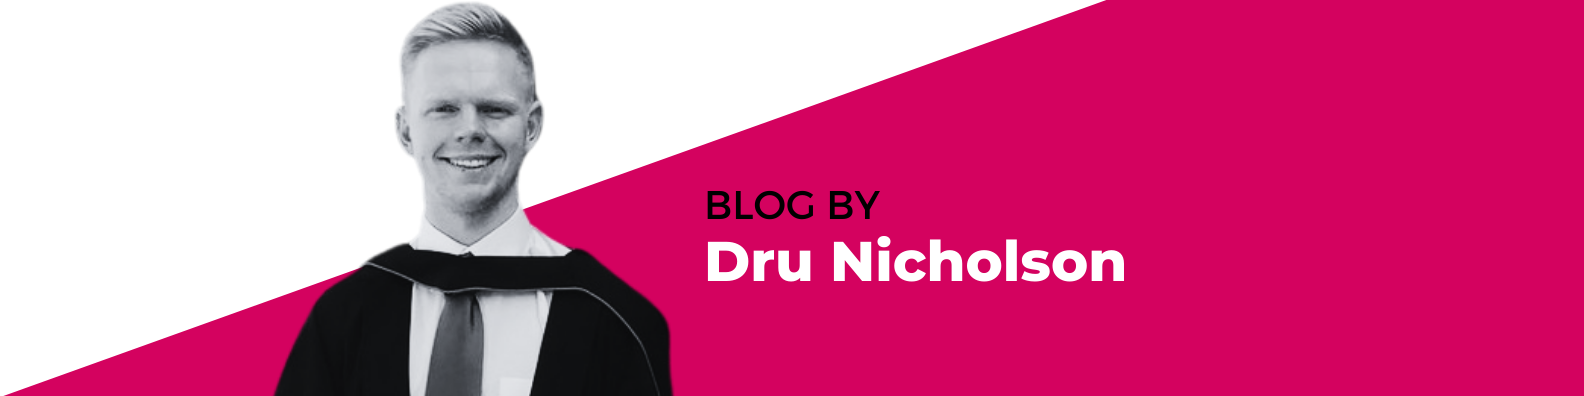 blog by dru nicholson